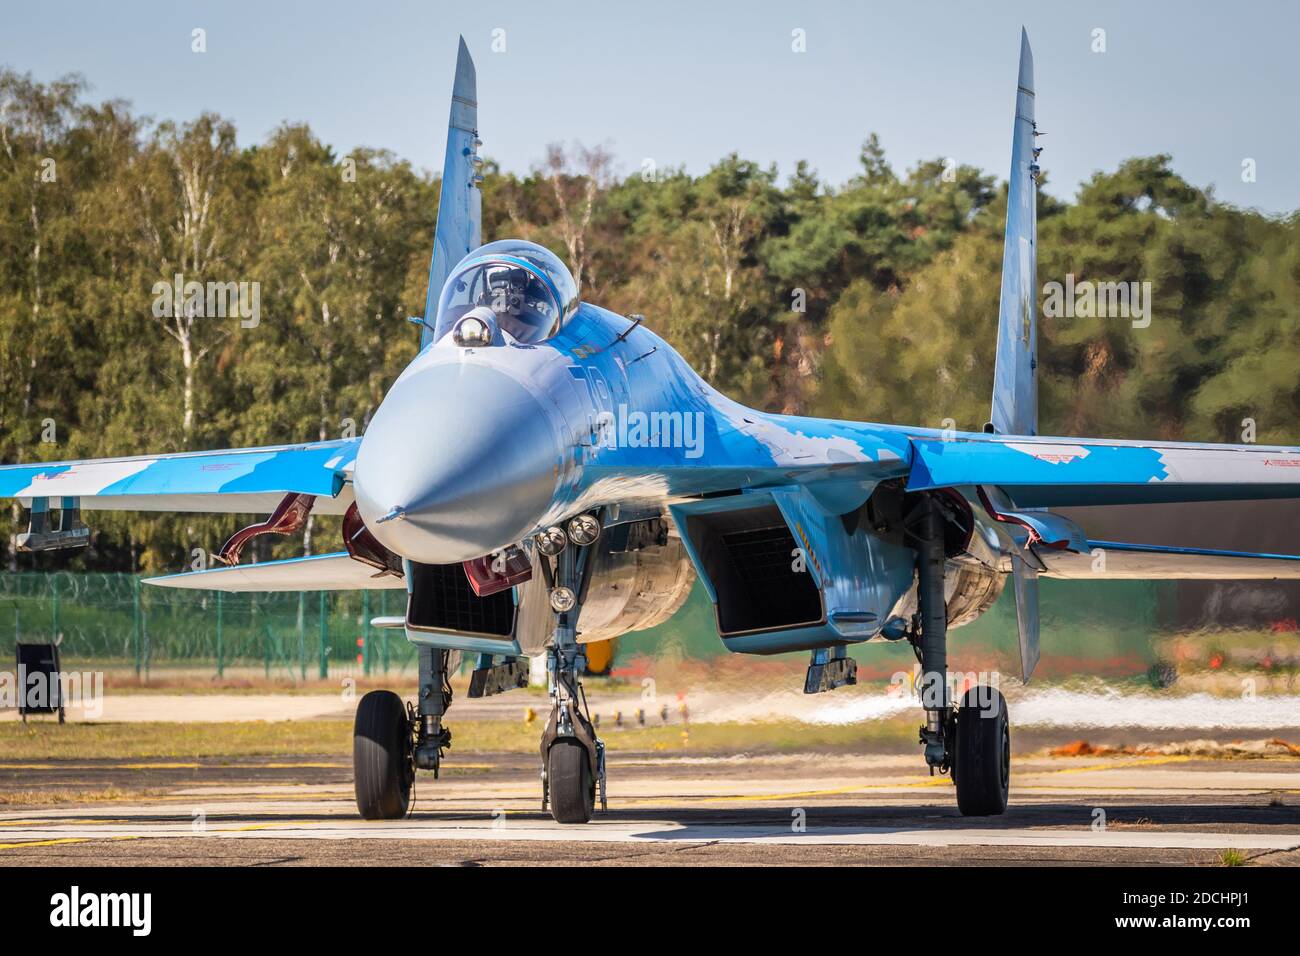 Ukrainian Air Force Sukhoi su-27 avion de chasse à bord d'un avion de chasse à bord de la piste à la base aérienne de Kleine-Brogel. 14 septembre 2019 Banque D'Images